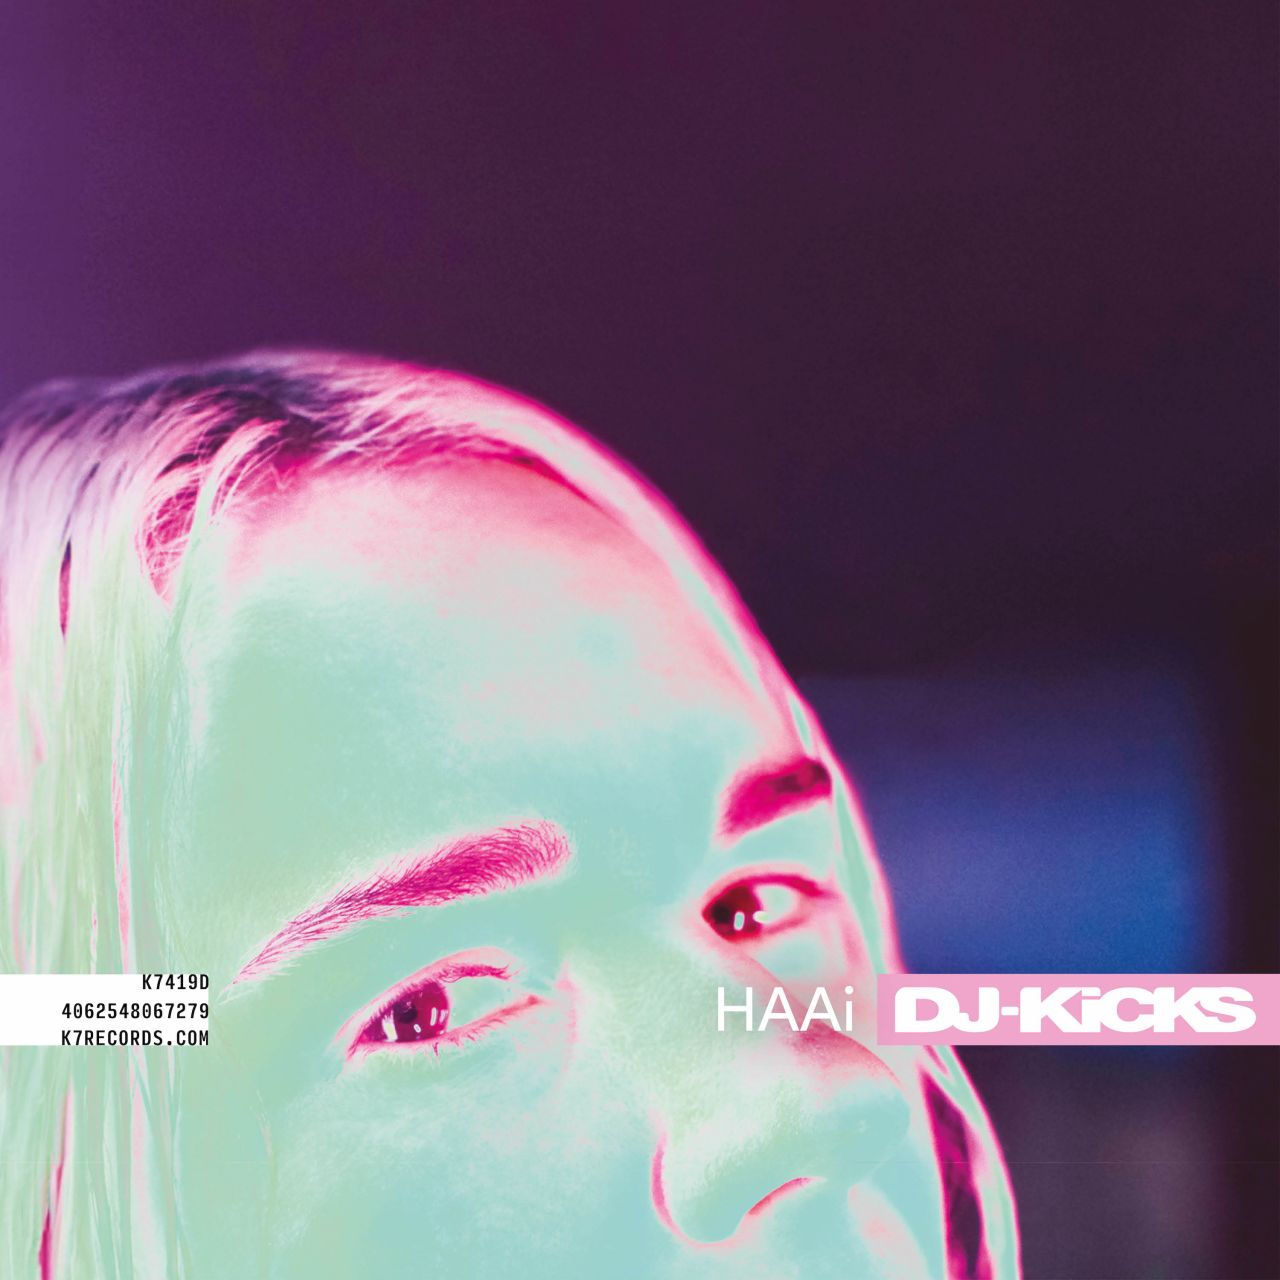 HAAi - DJ Kicks - CD